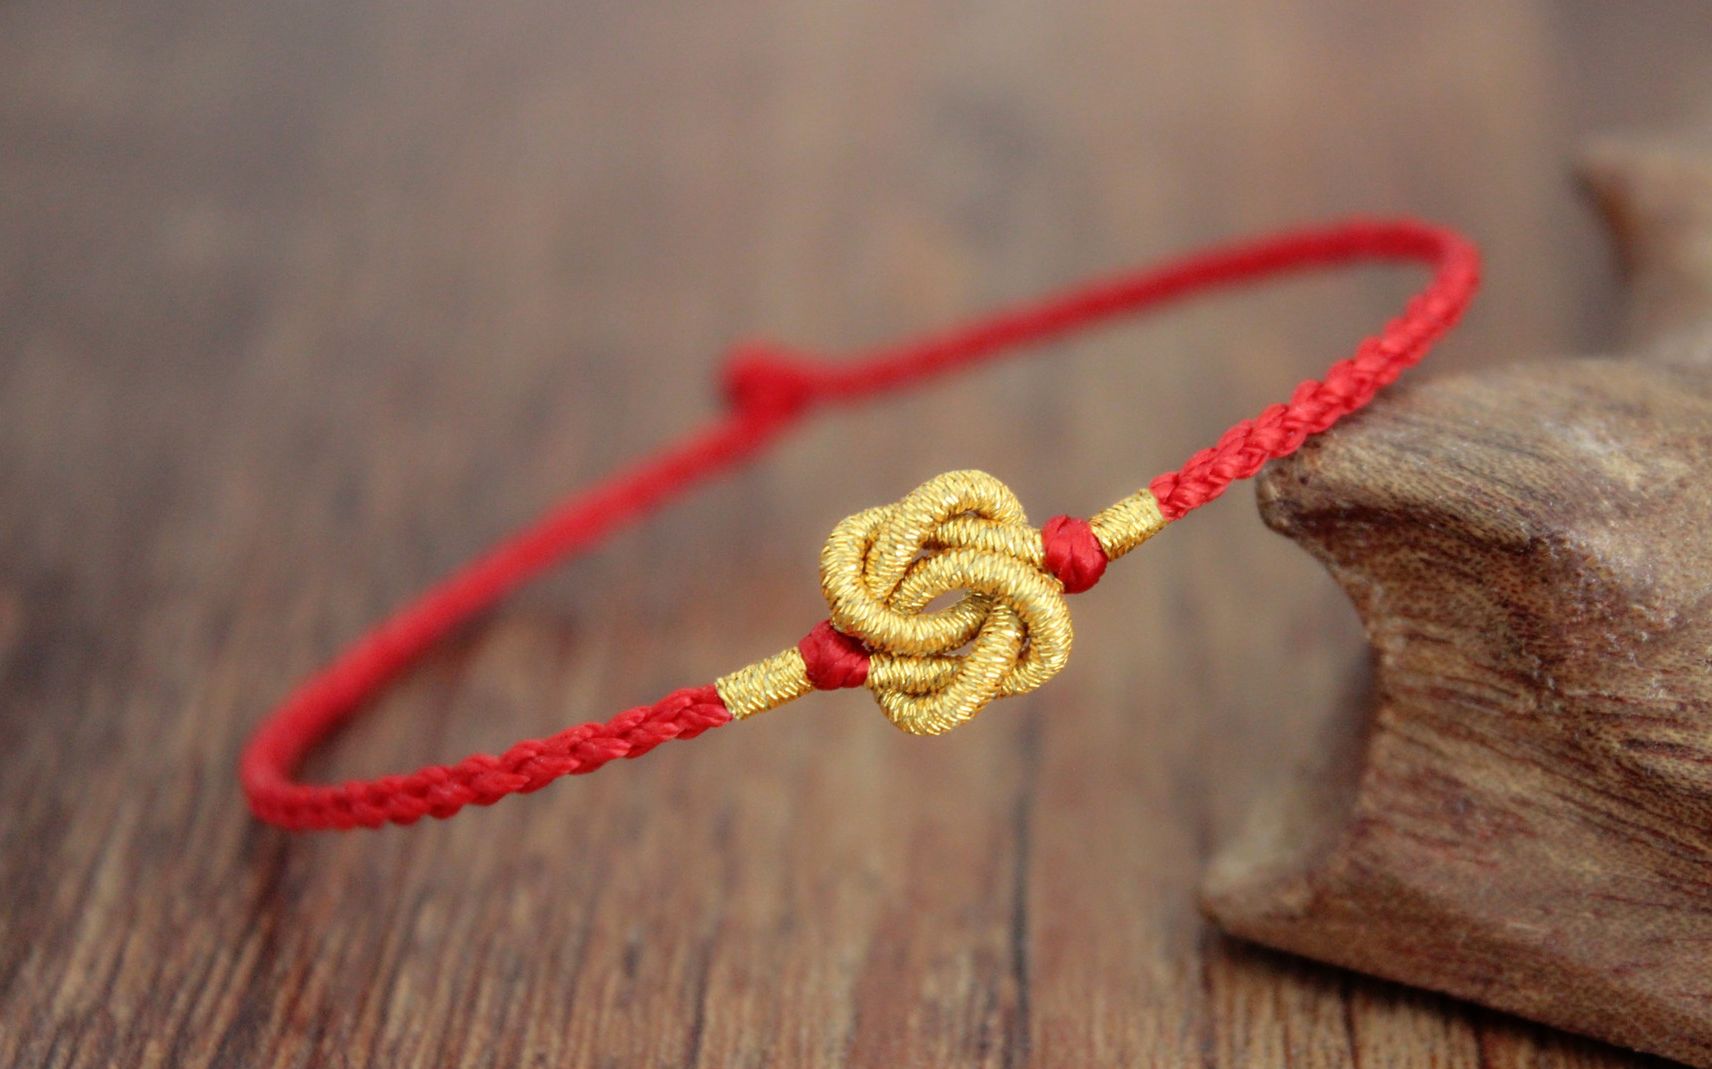 【胜景影视】超长版女绳师教绳模们学习绳艺 - 最新资源 - 青兰花